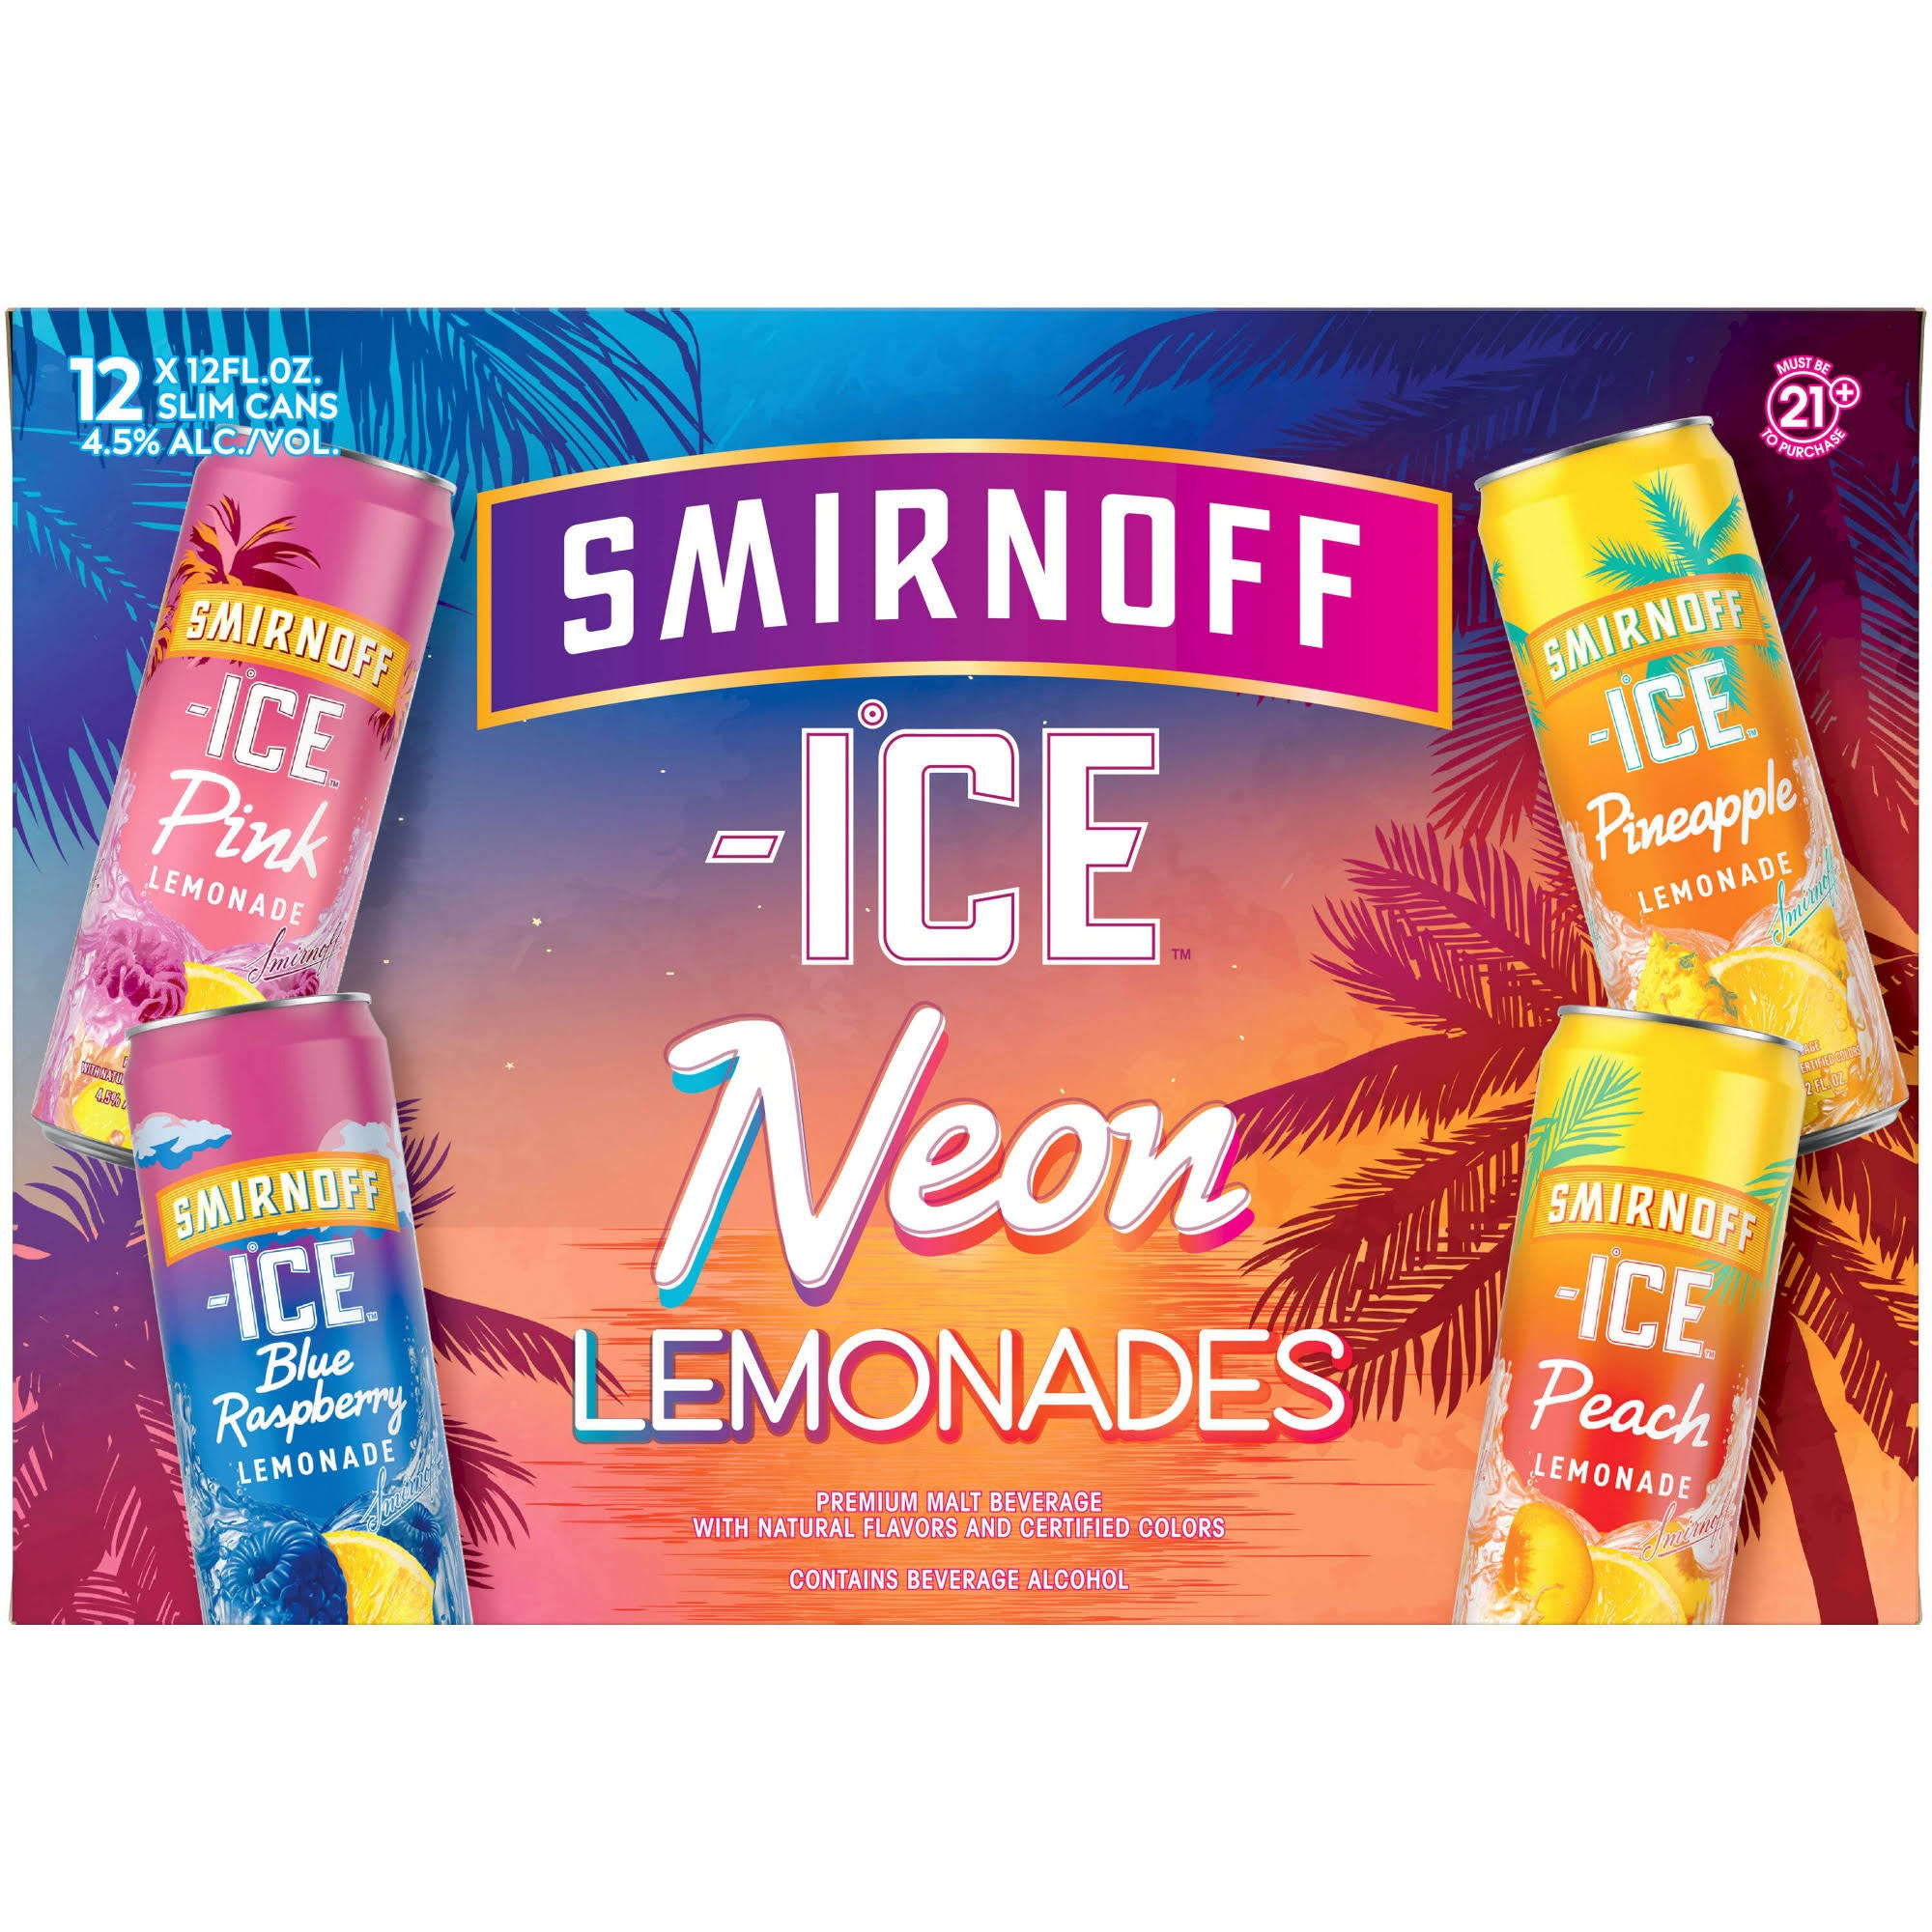 Smirnoff Ice Malt Beverage, Neon Lemonades - 12 pack, 12 fl oz slim cans